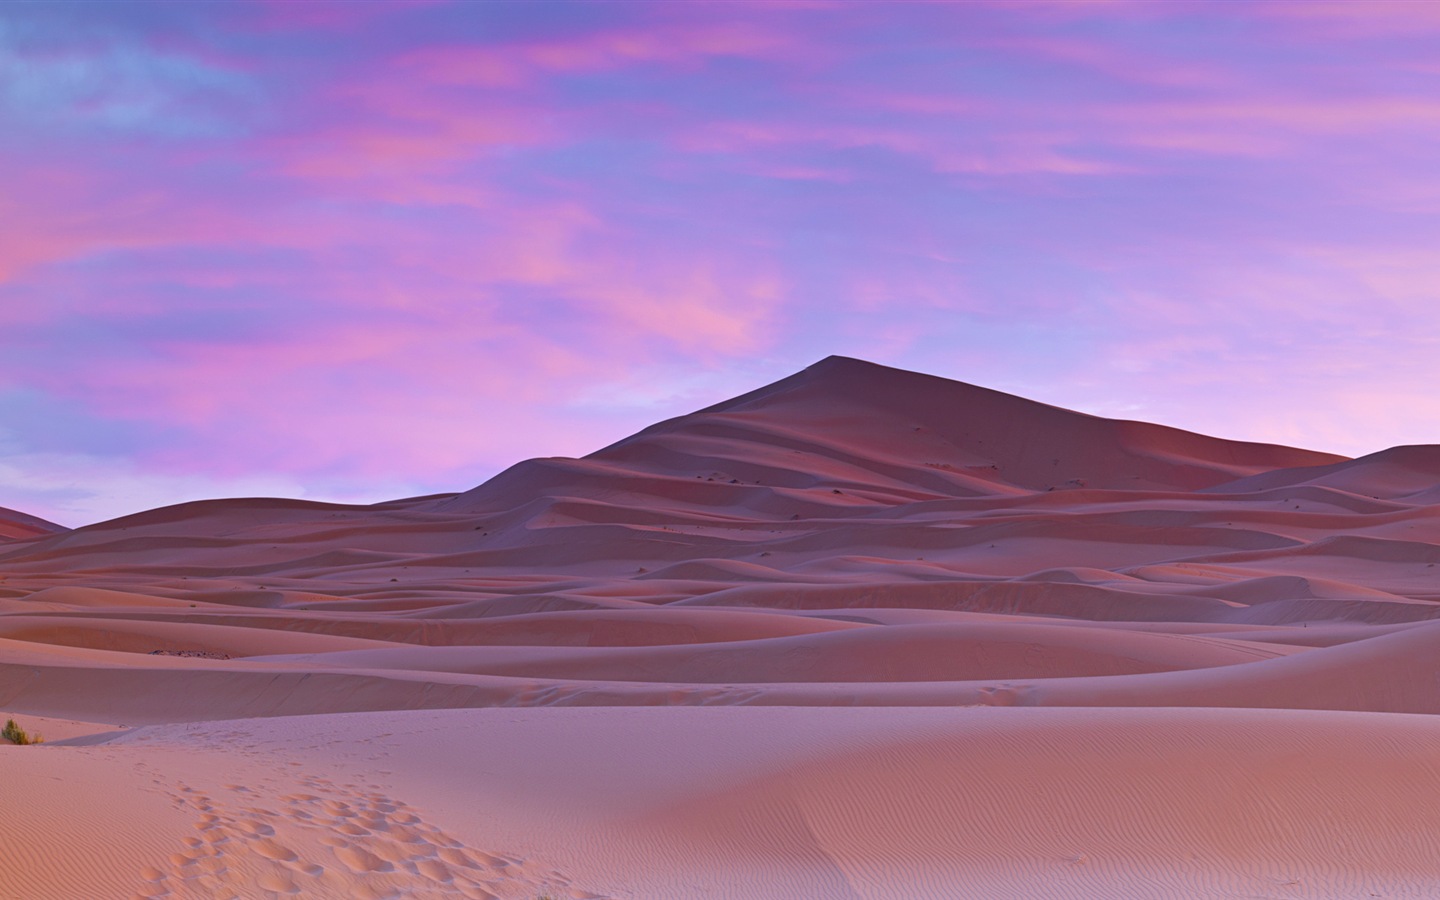 Les déserts chauds et arides, de Windows 8 fonds d'écran widescreen panoramique #1 - 1440x900